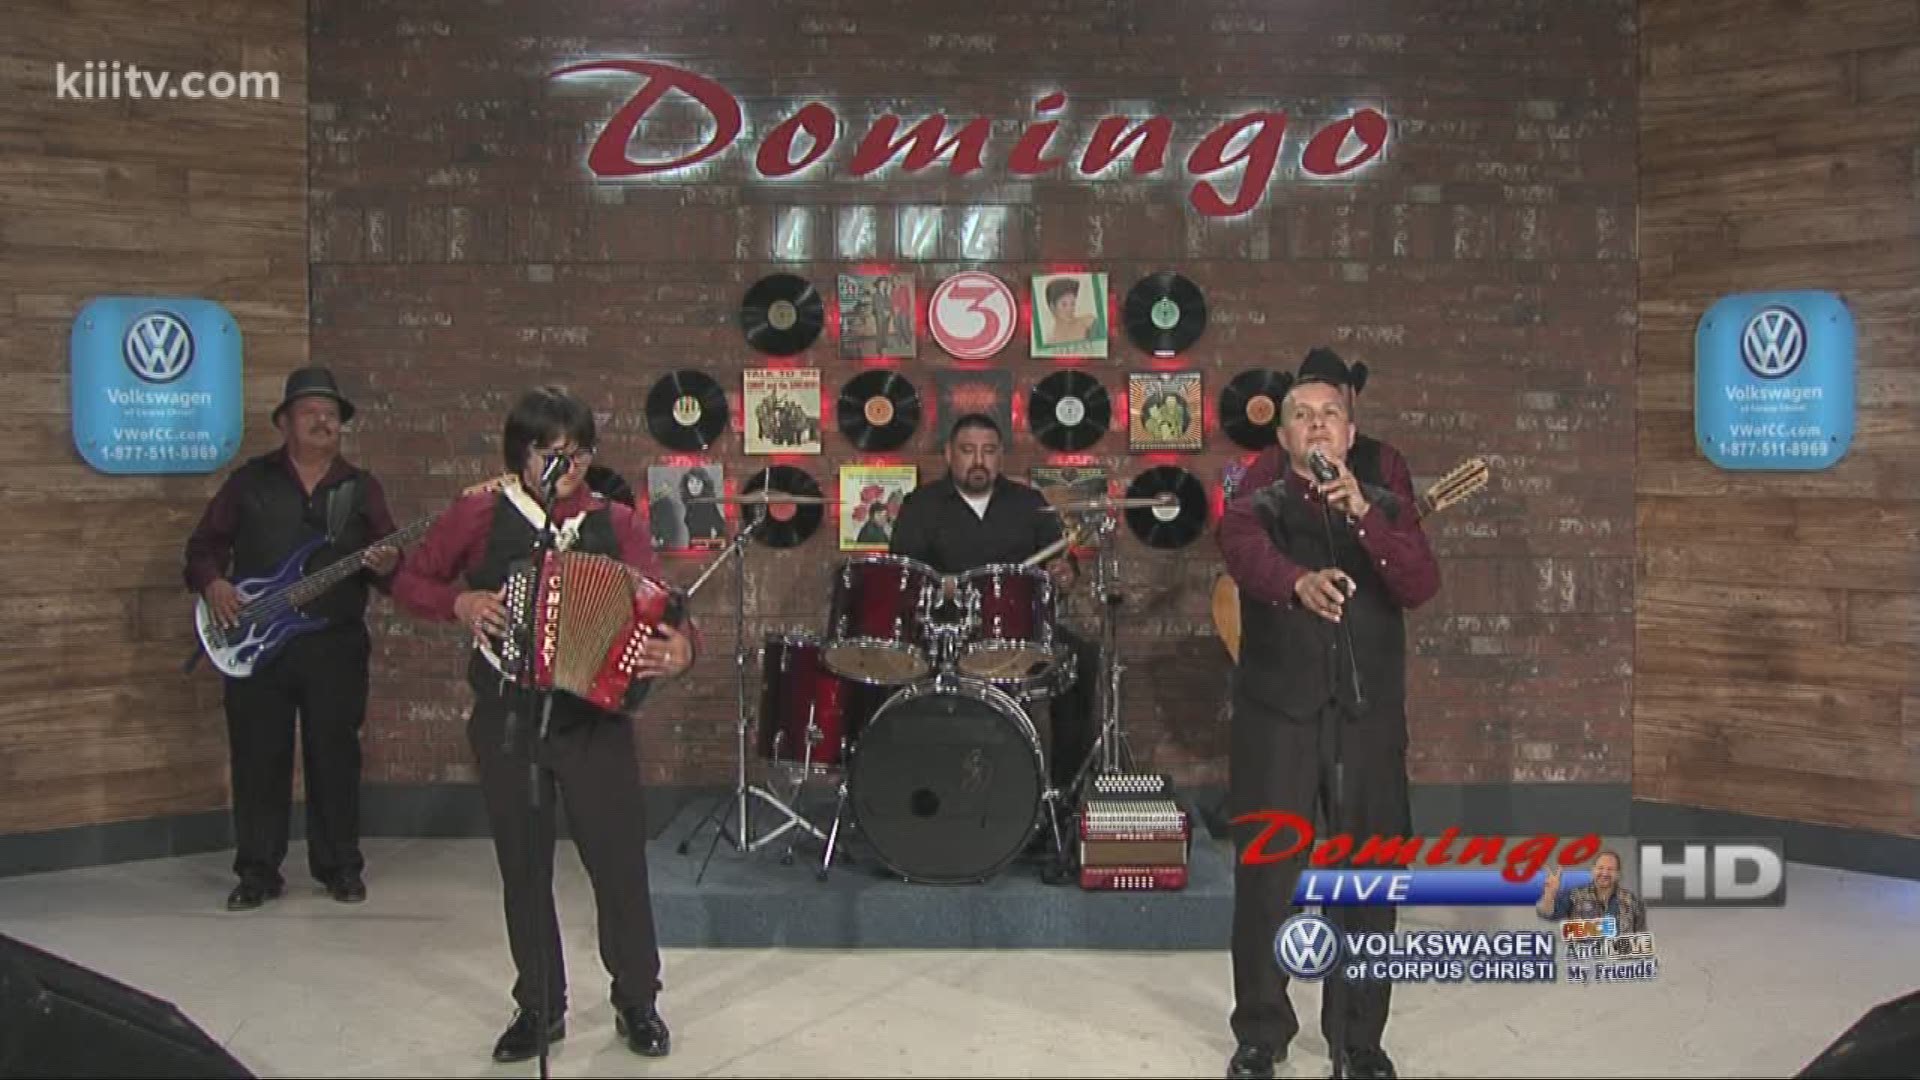 Ramon Lucio Y Conjunto Dominante performing "Corazon De Hielo" on Domingo Live.